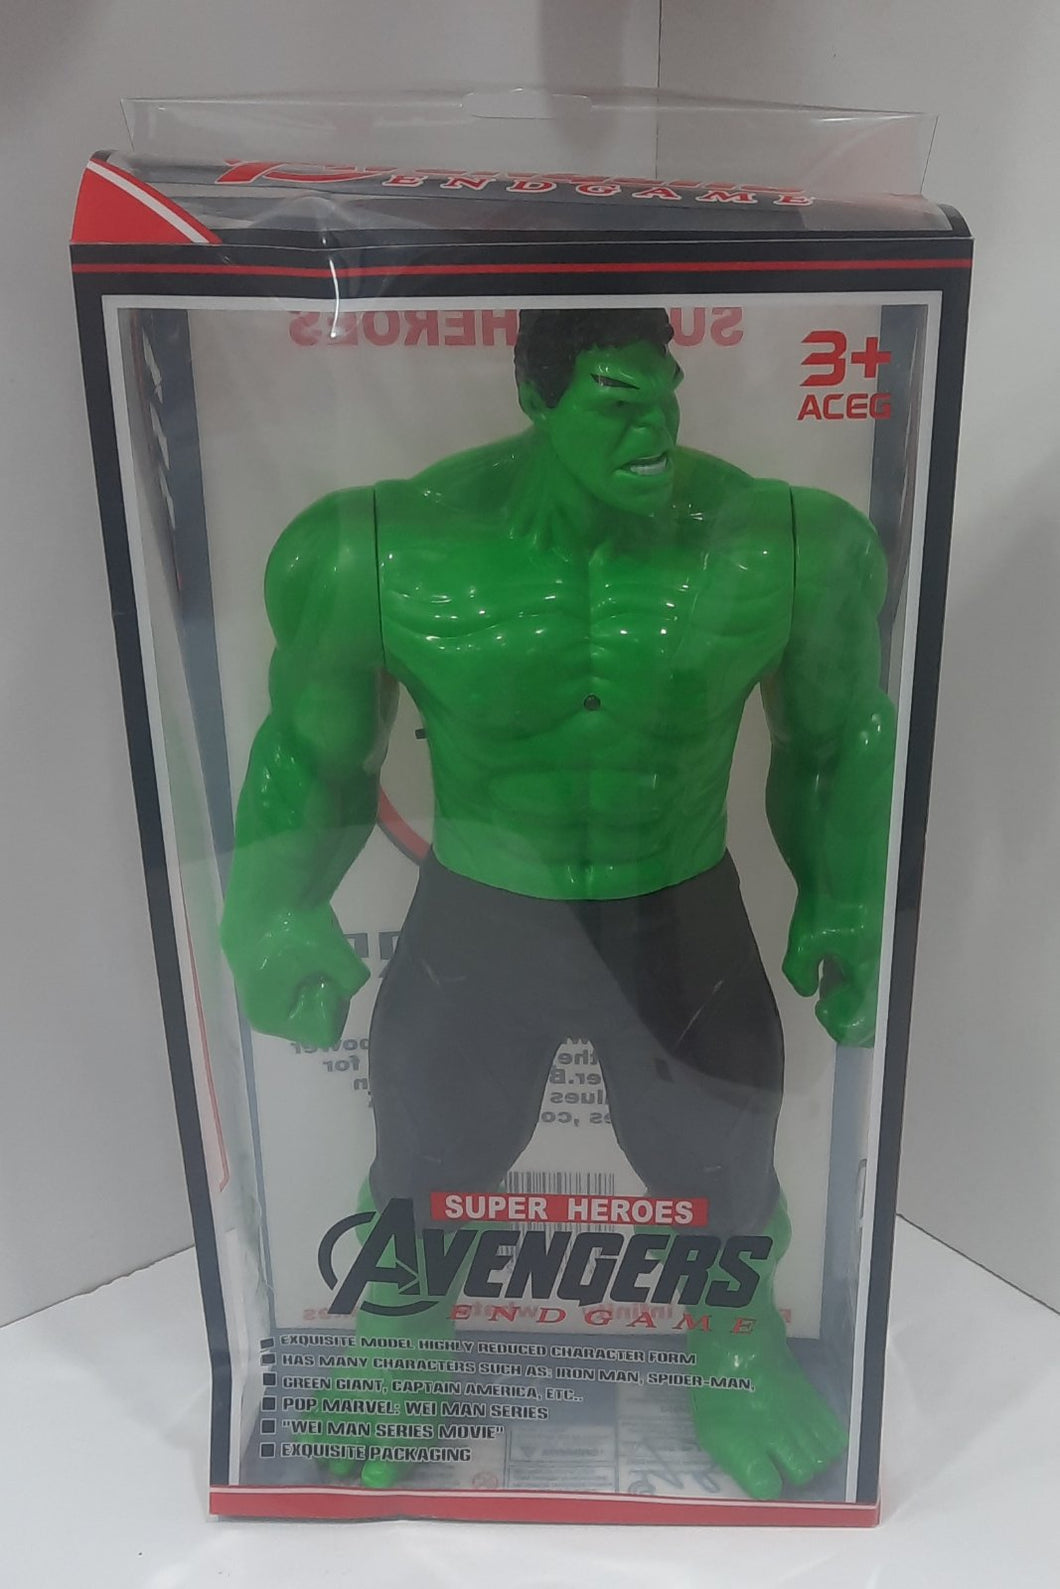 Խաղալիք Avengers